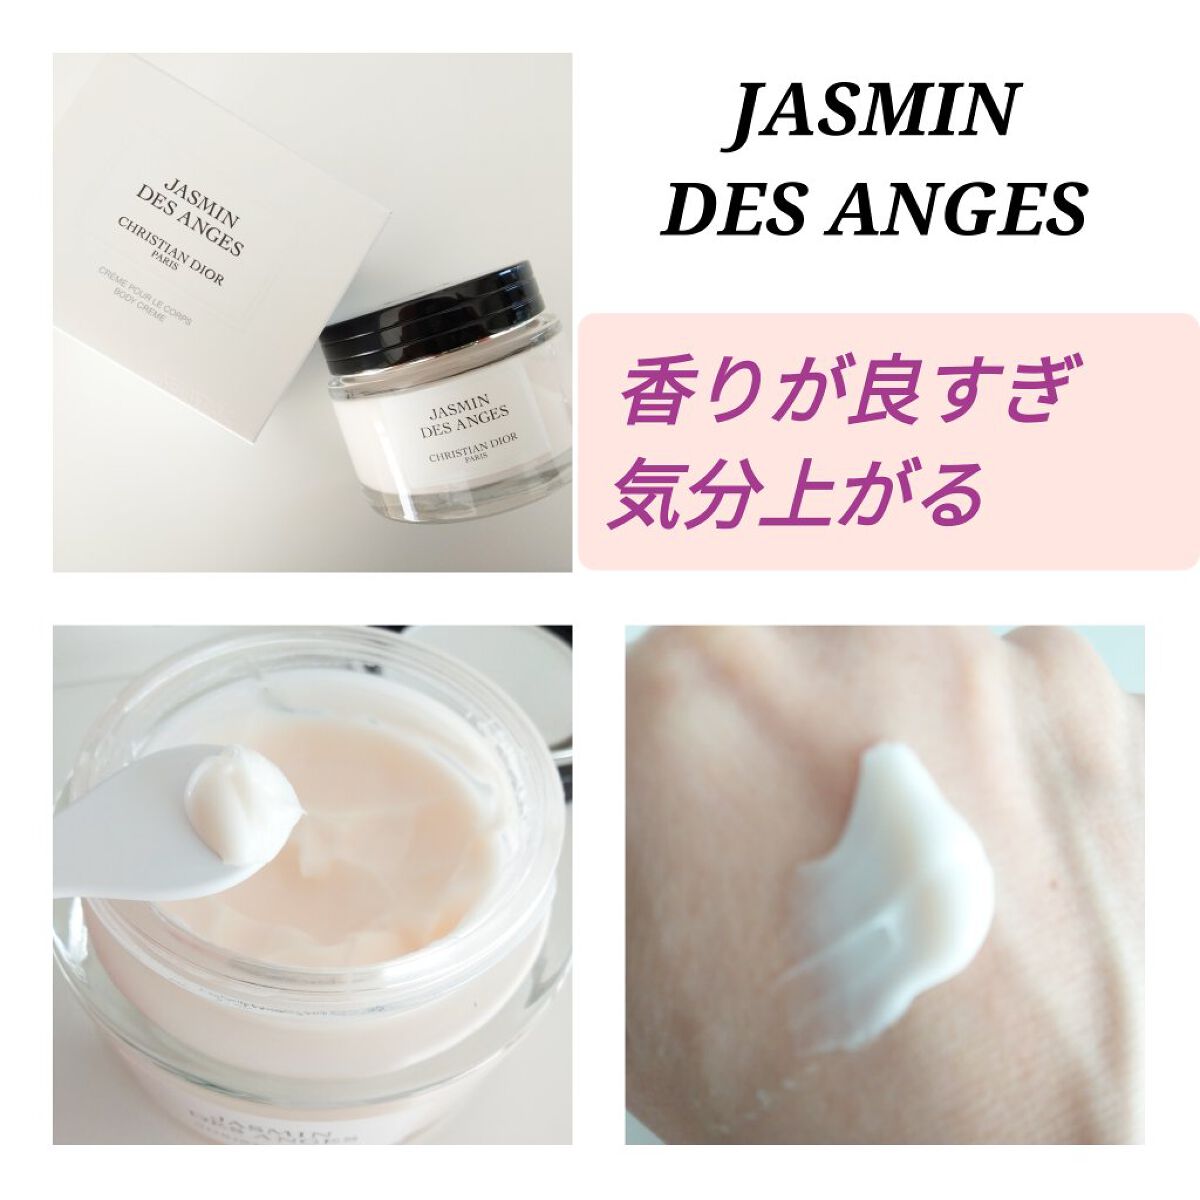 大特価通販 Dior JASMIN DES ANGES ボディクリーム150ml OStk3